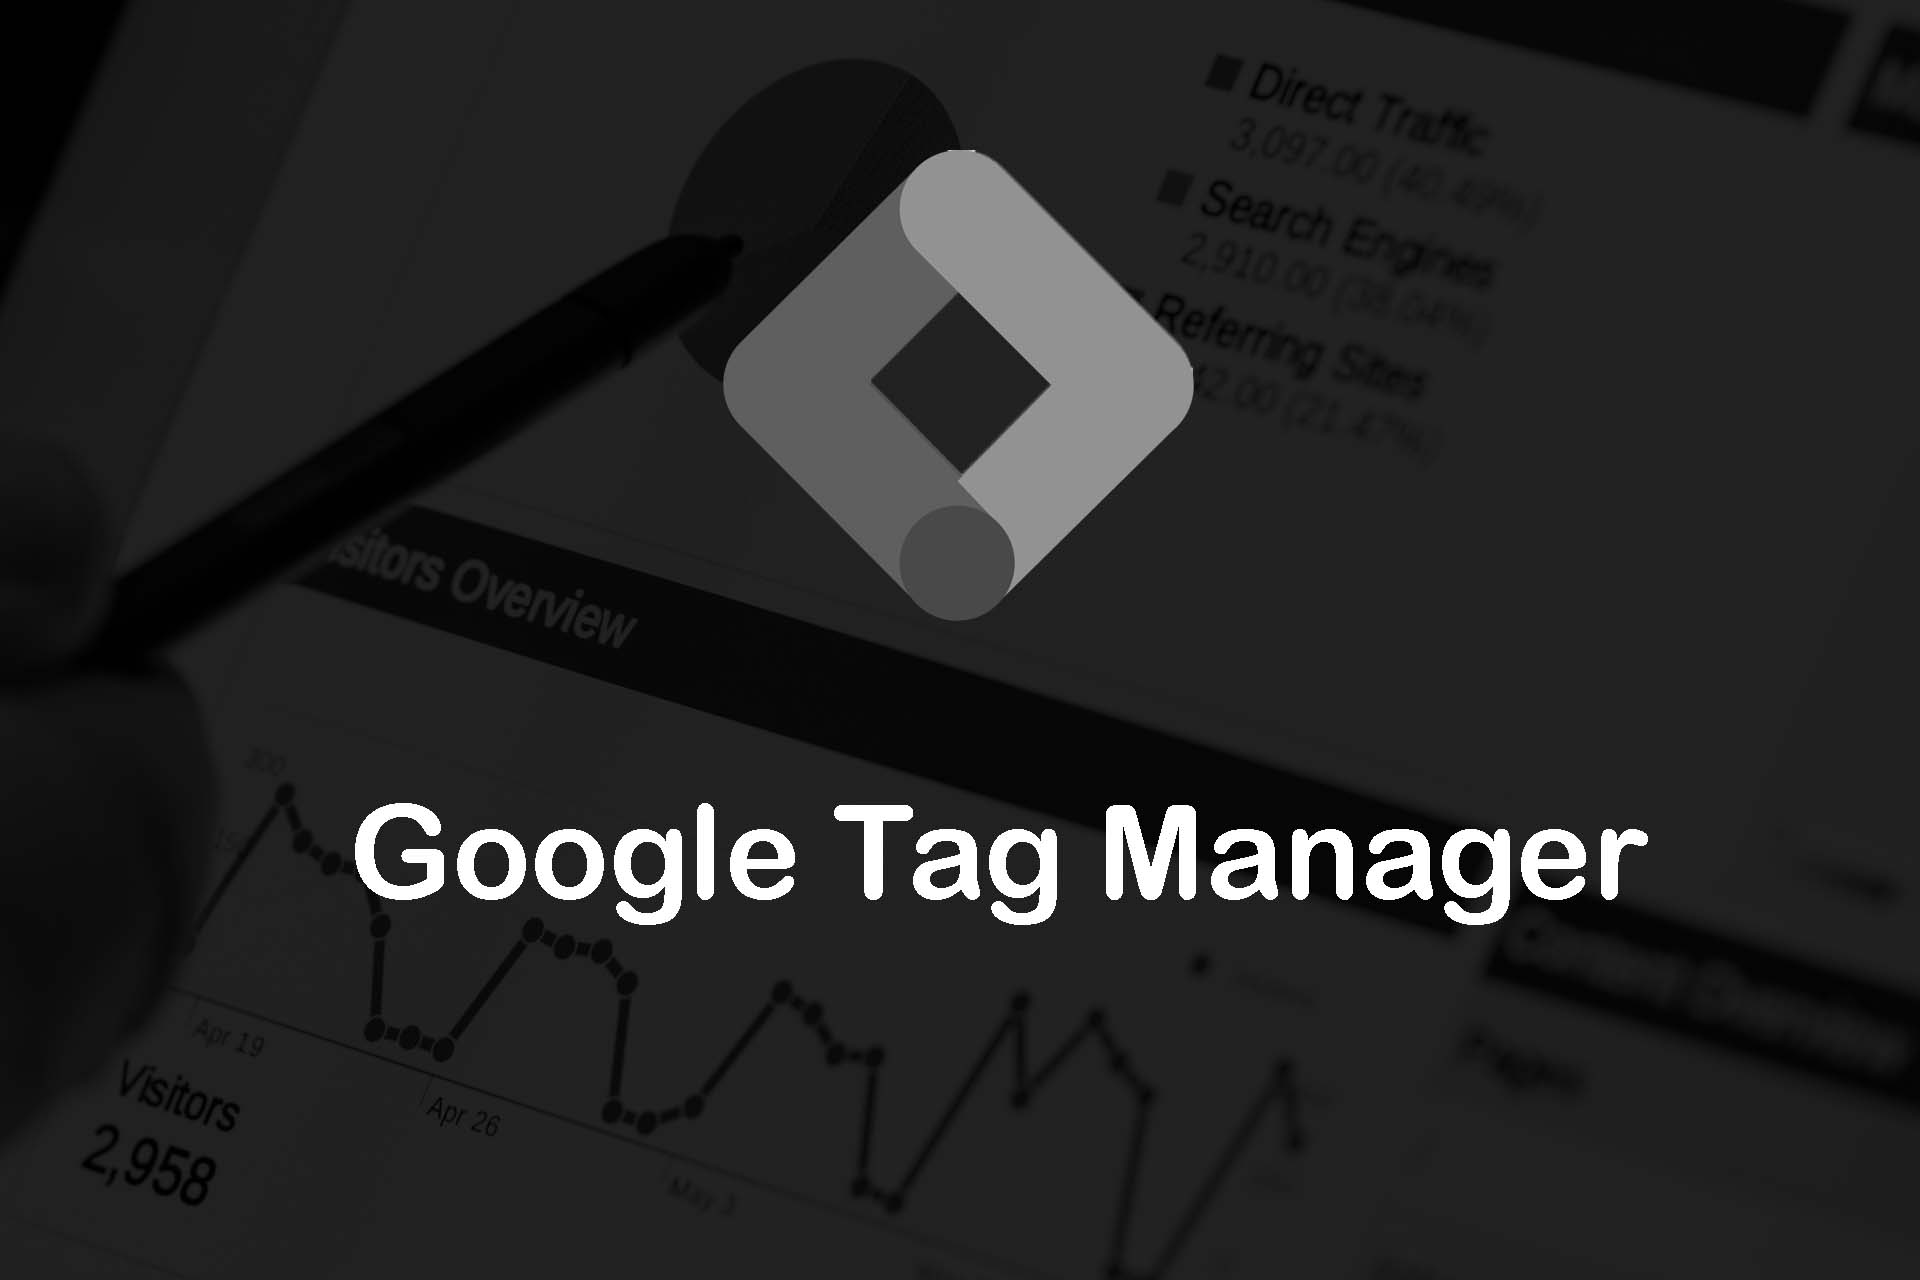 ¿Cómo descargo un PDF y lo sigo con Google Tag Manager?